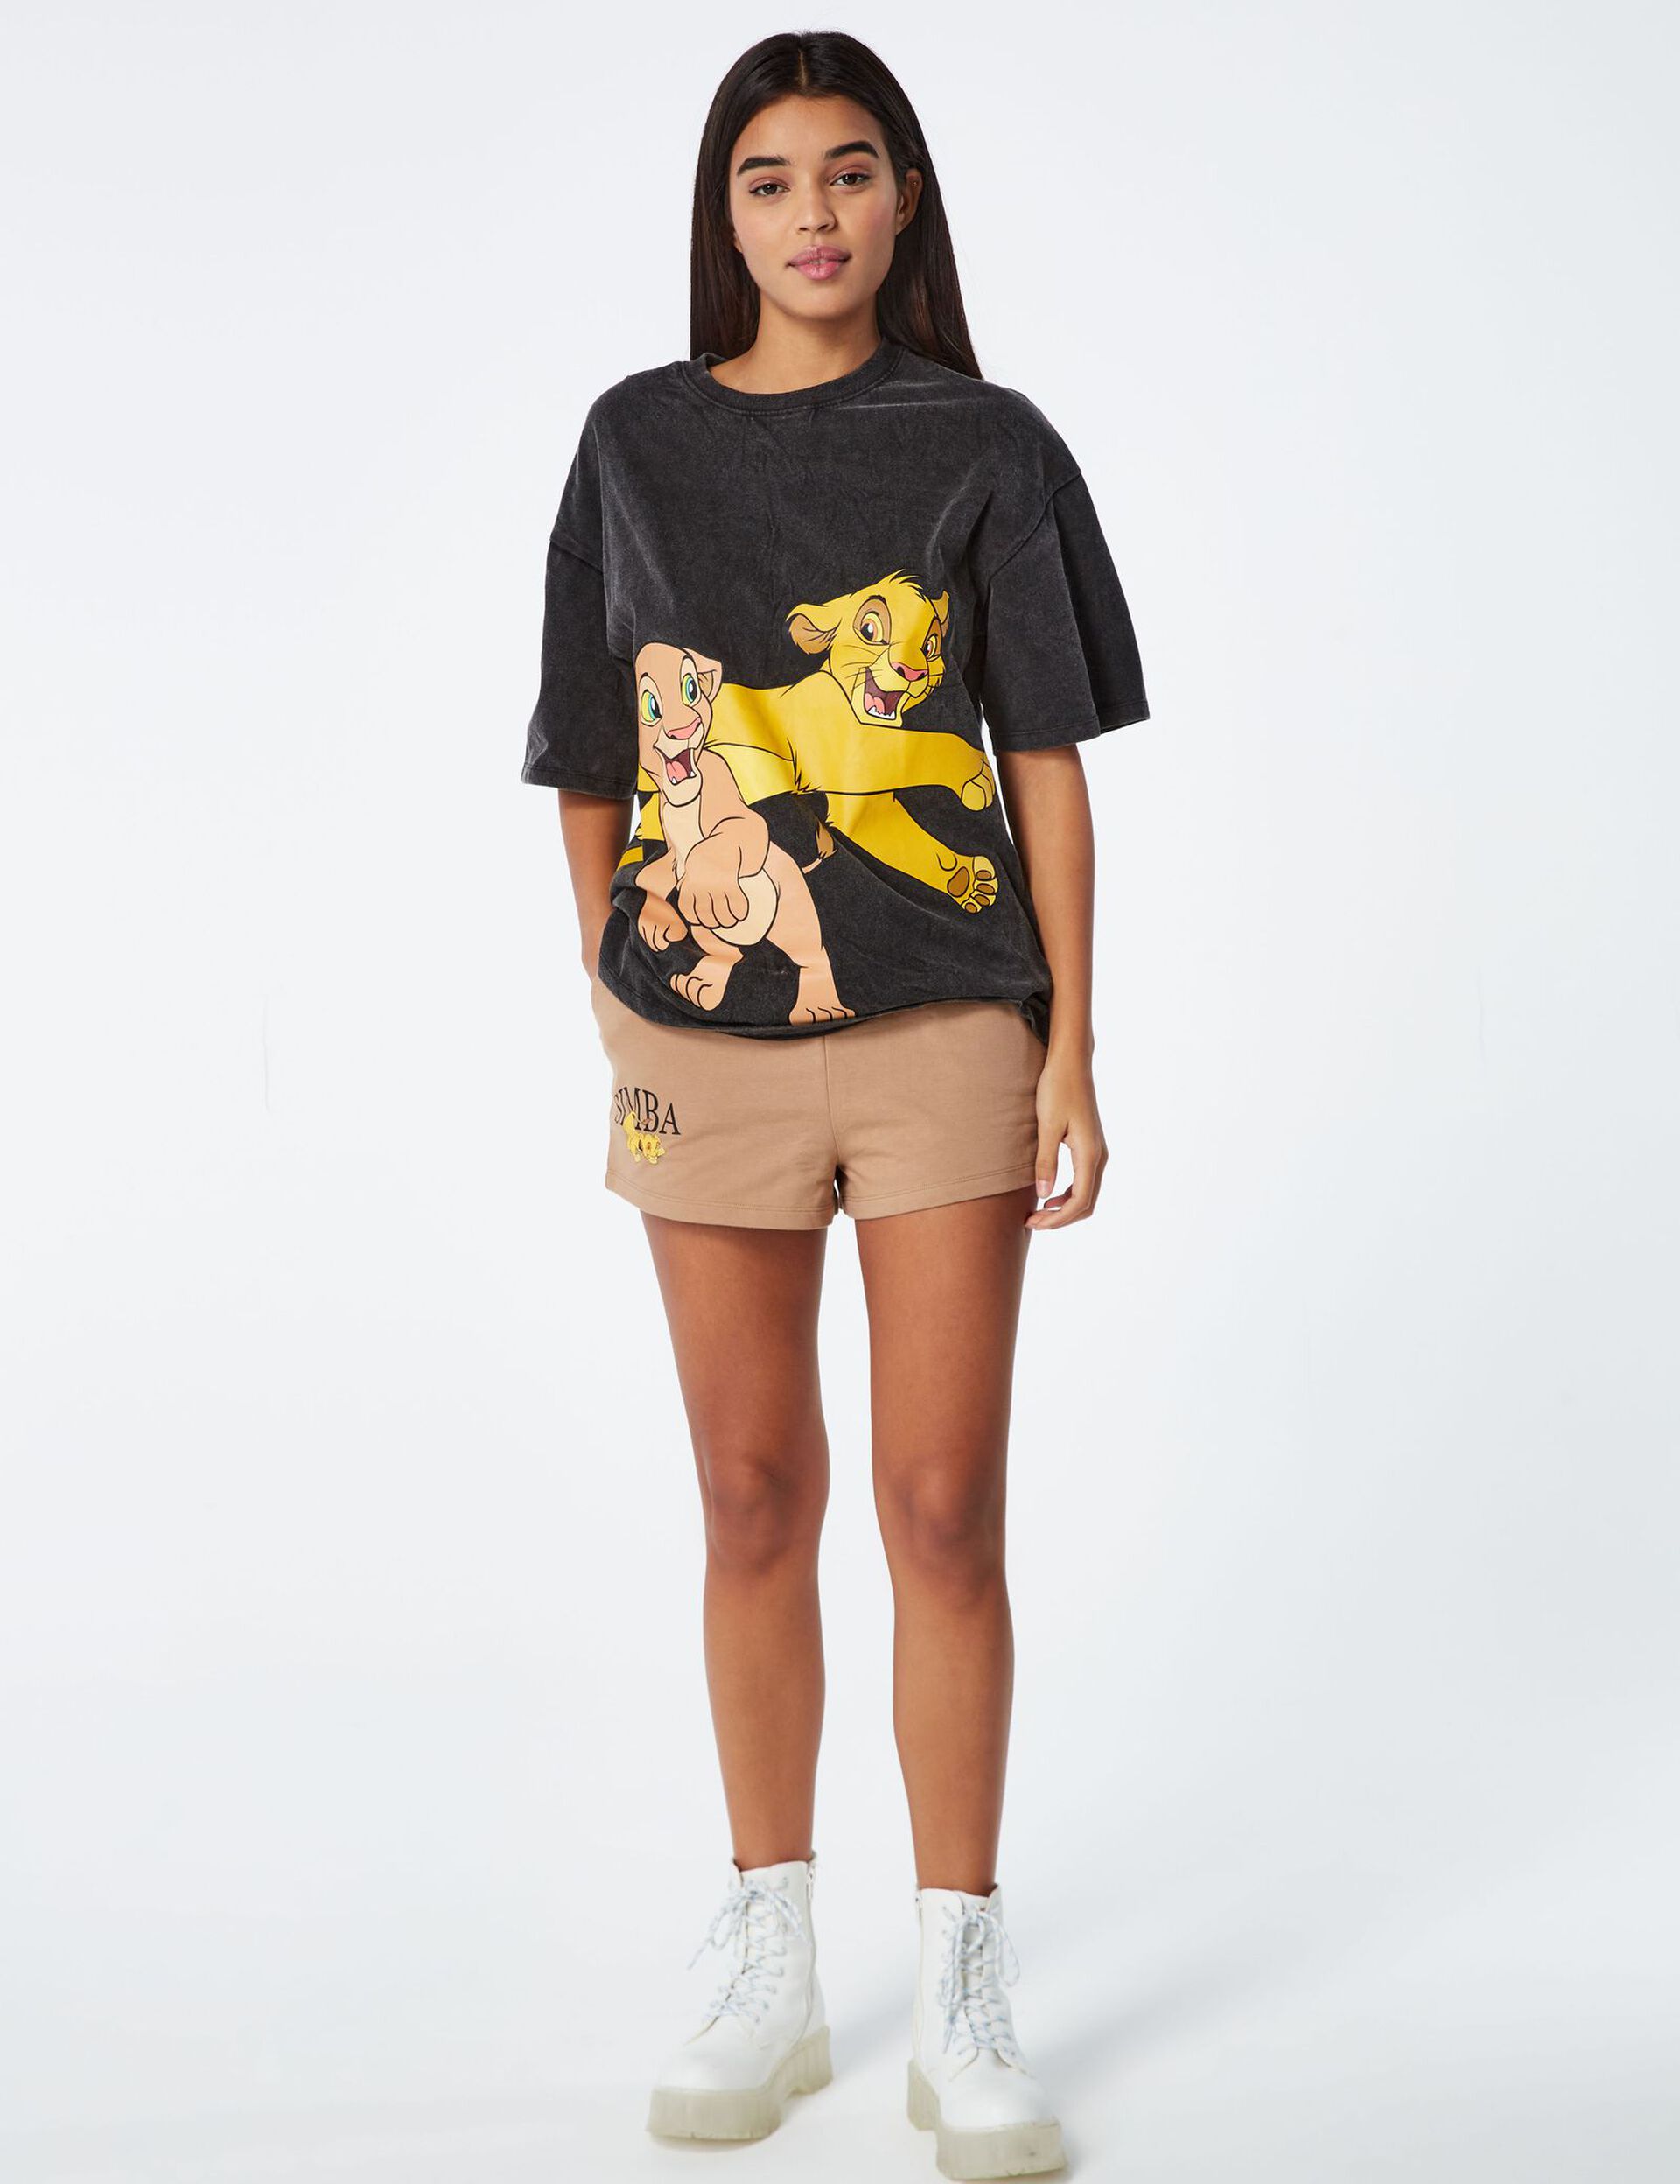 Tee-shirt Disney Roi lion